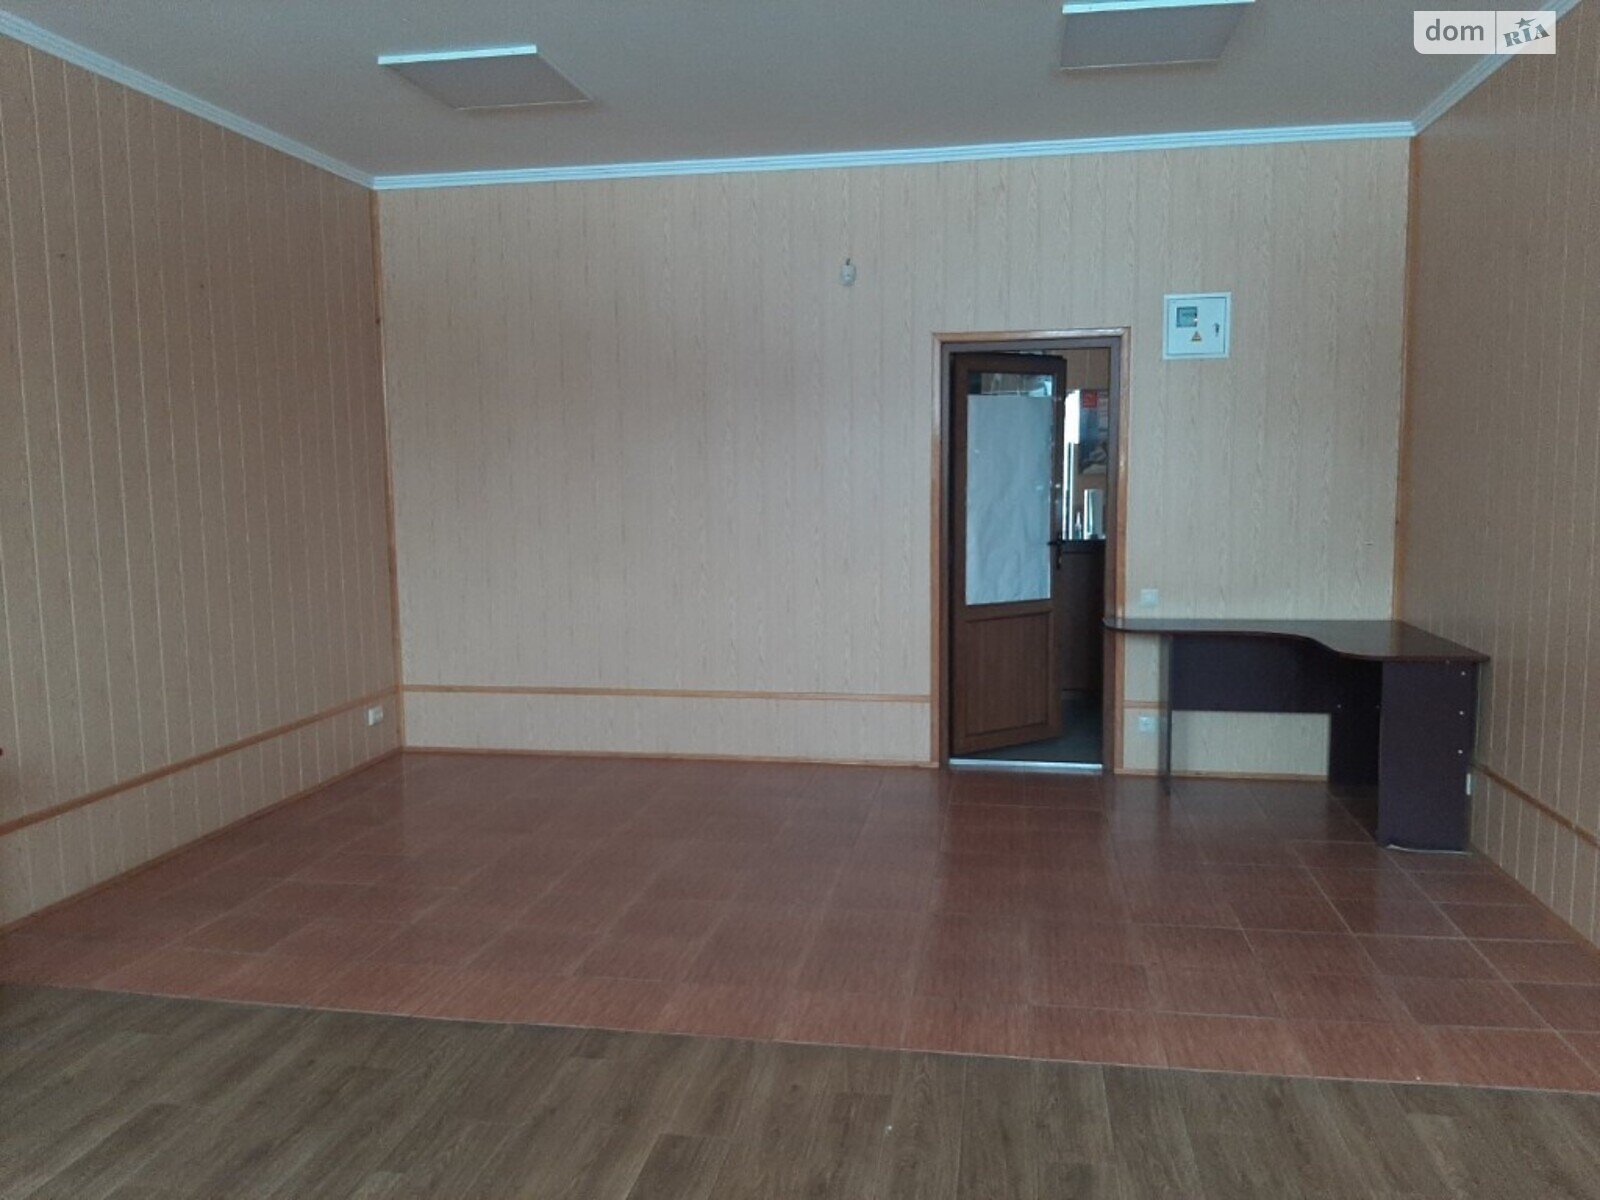 Аренда офисного помещения в Виннице, Академика Янгеля улица 4, помещений - 1, этаж - 2 фото 1